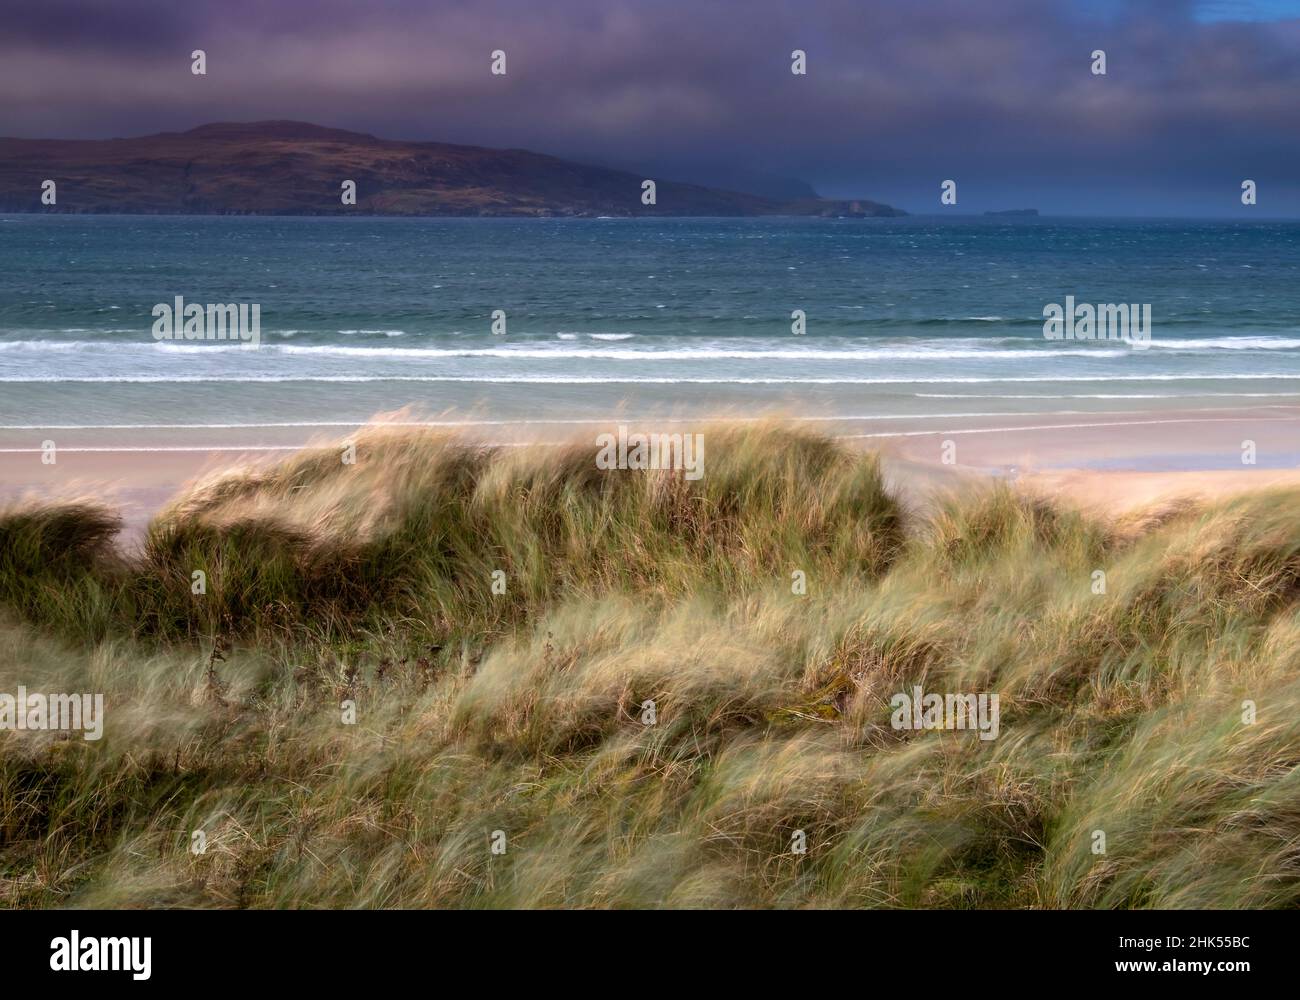 Baie de Balnakeil en quête de Cape Wrath, près de Durness, Sutherland, Highlands écossais du Nord-Ouest, Écosse, Royaume-Uni, Europe Banque D'Images